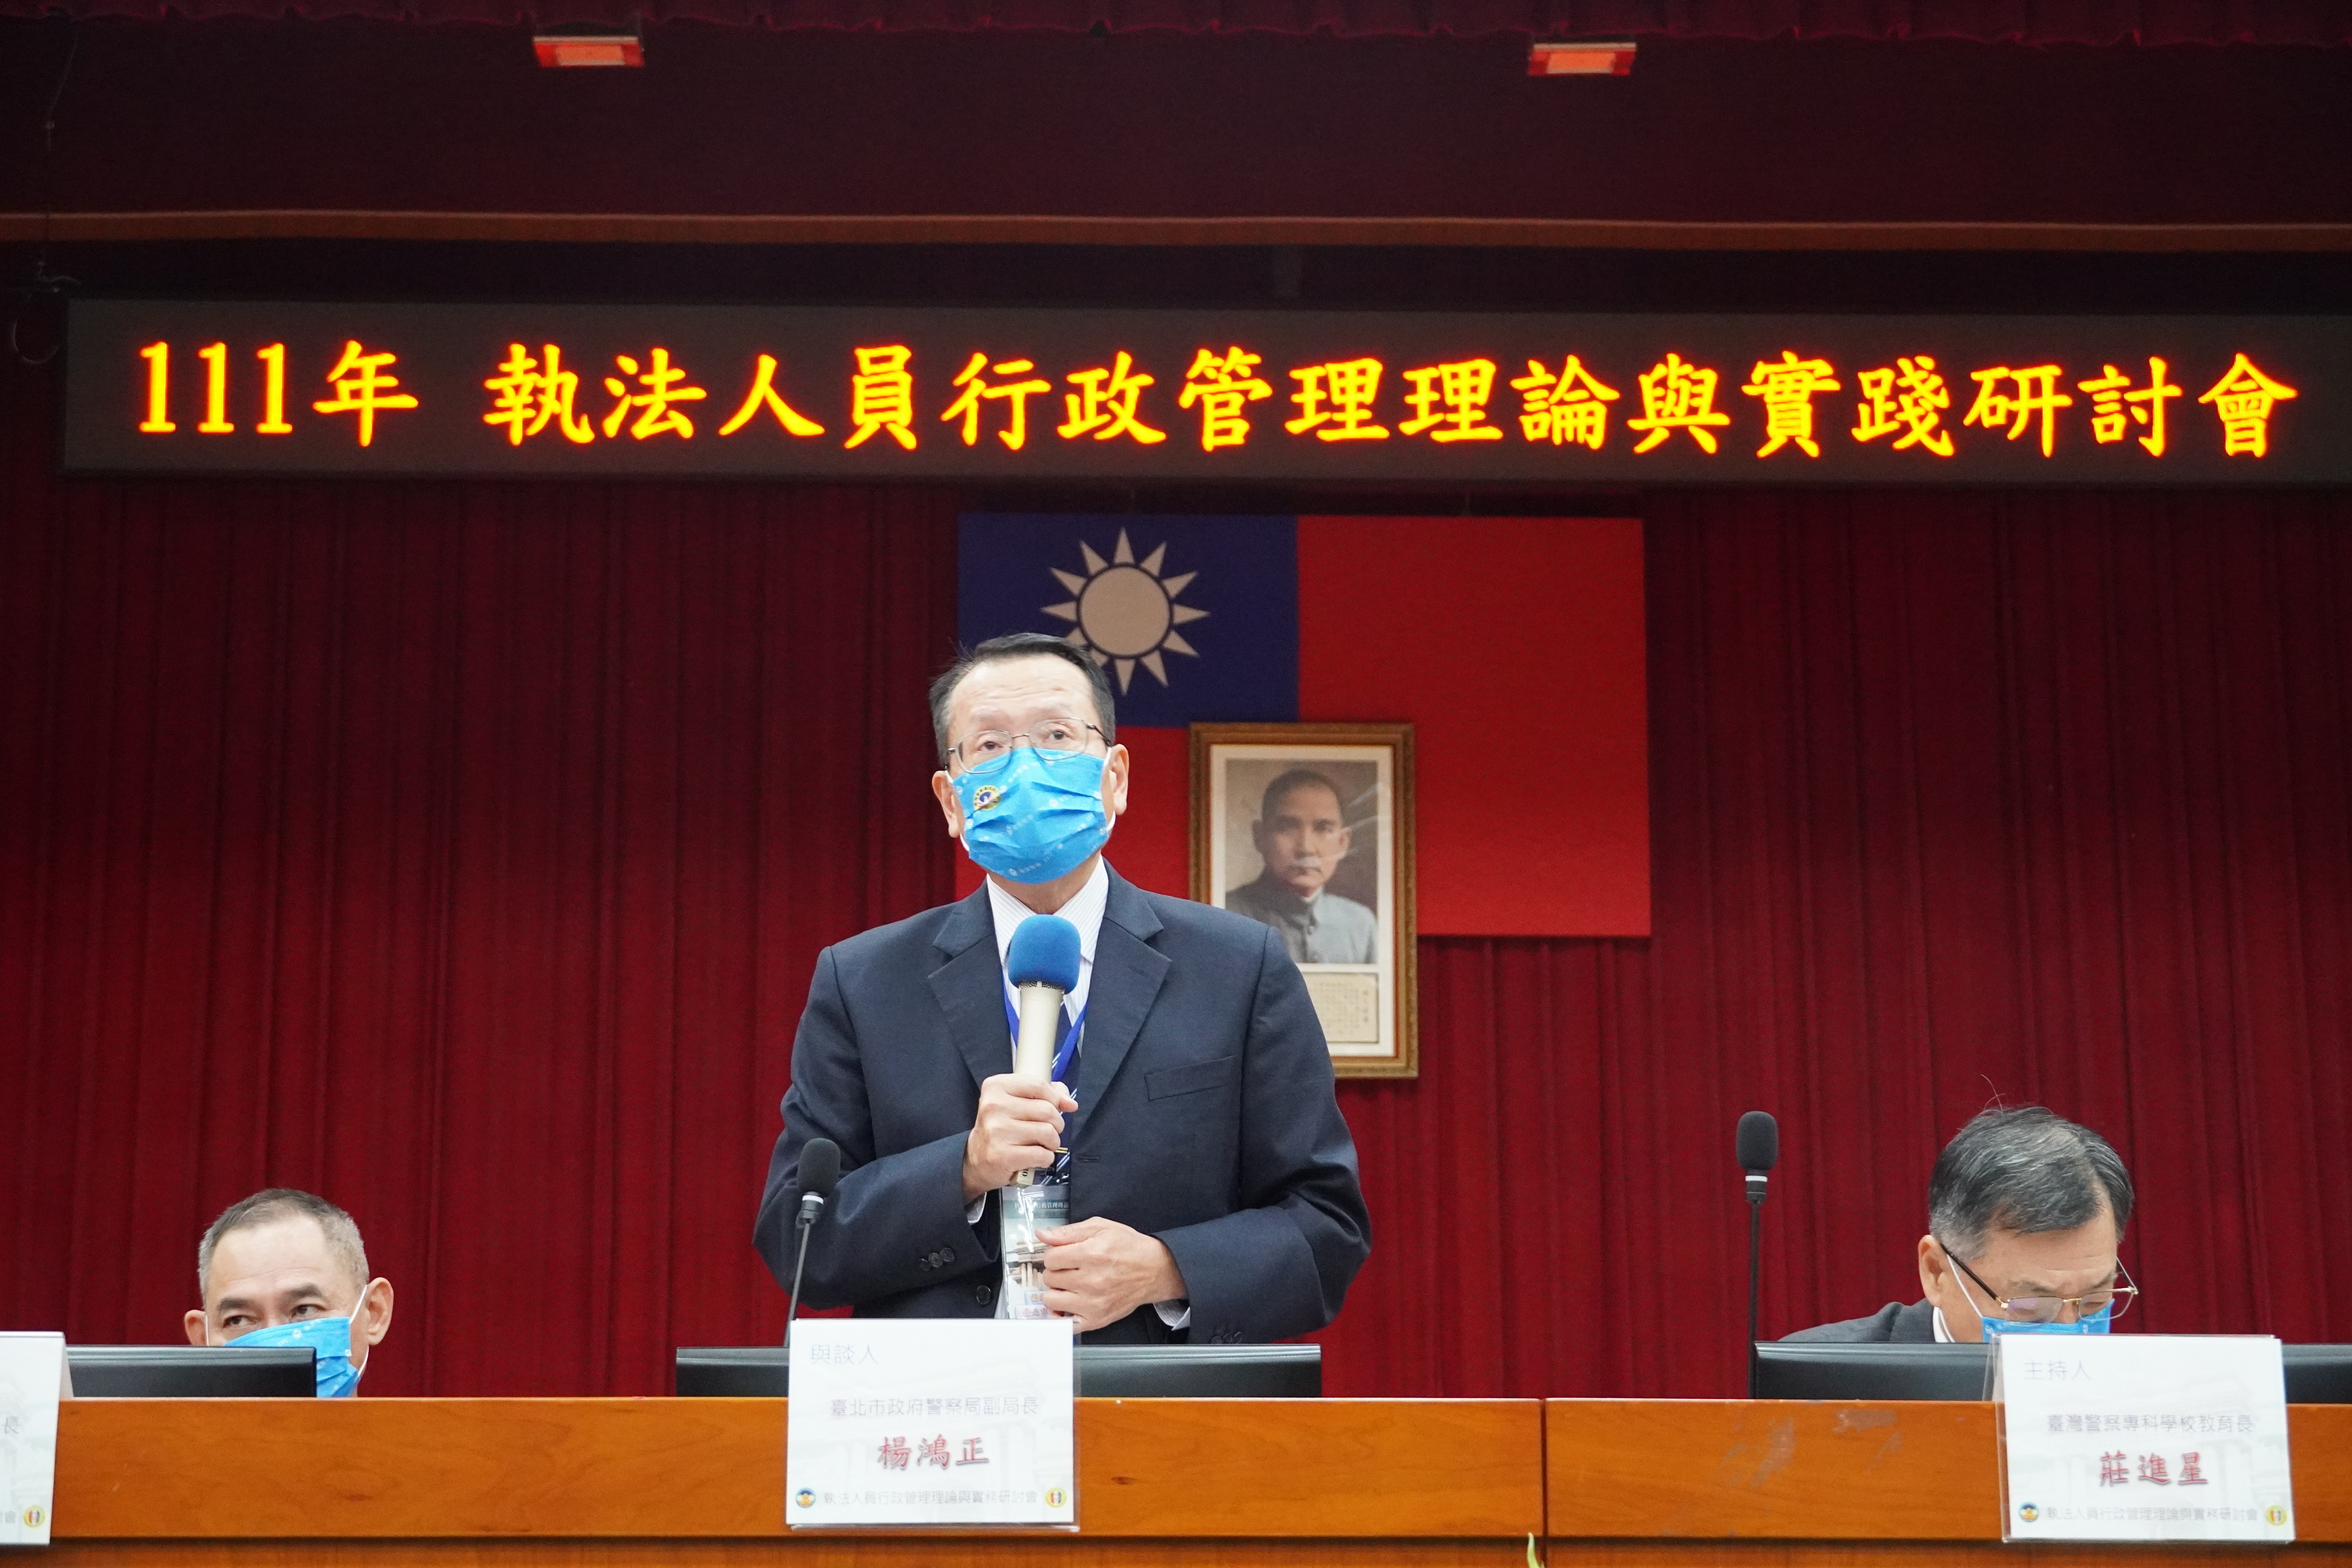 圓桌論壇發表人台北市政府警察局楊鴻正副局長